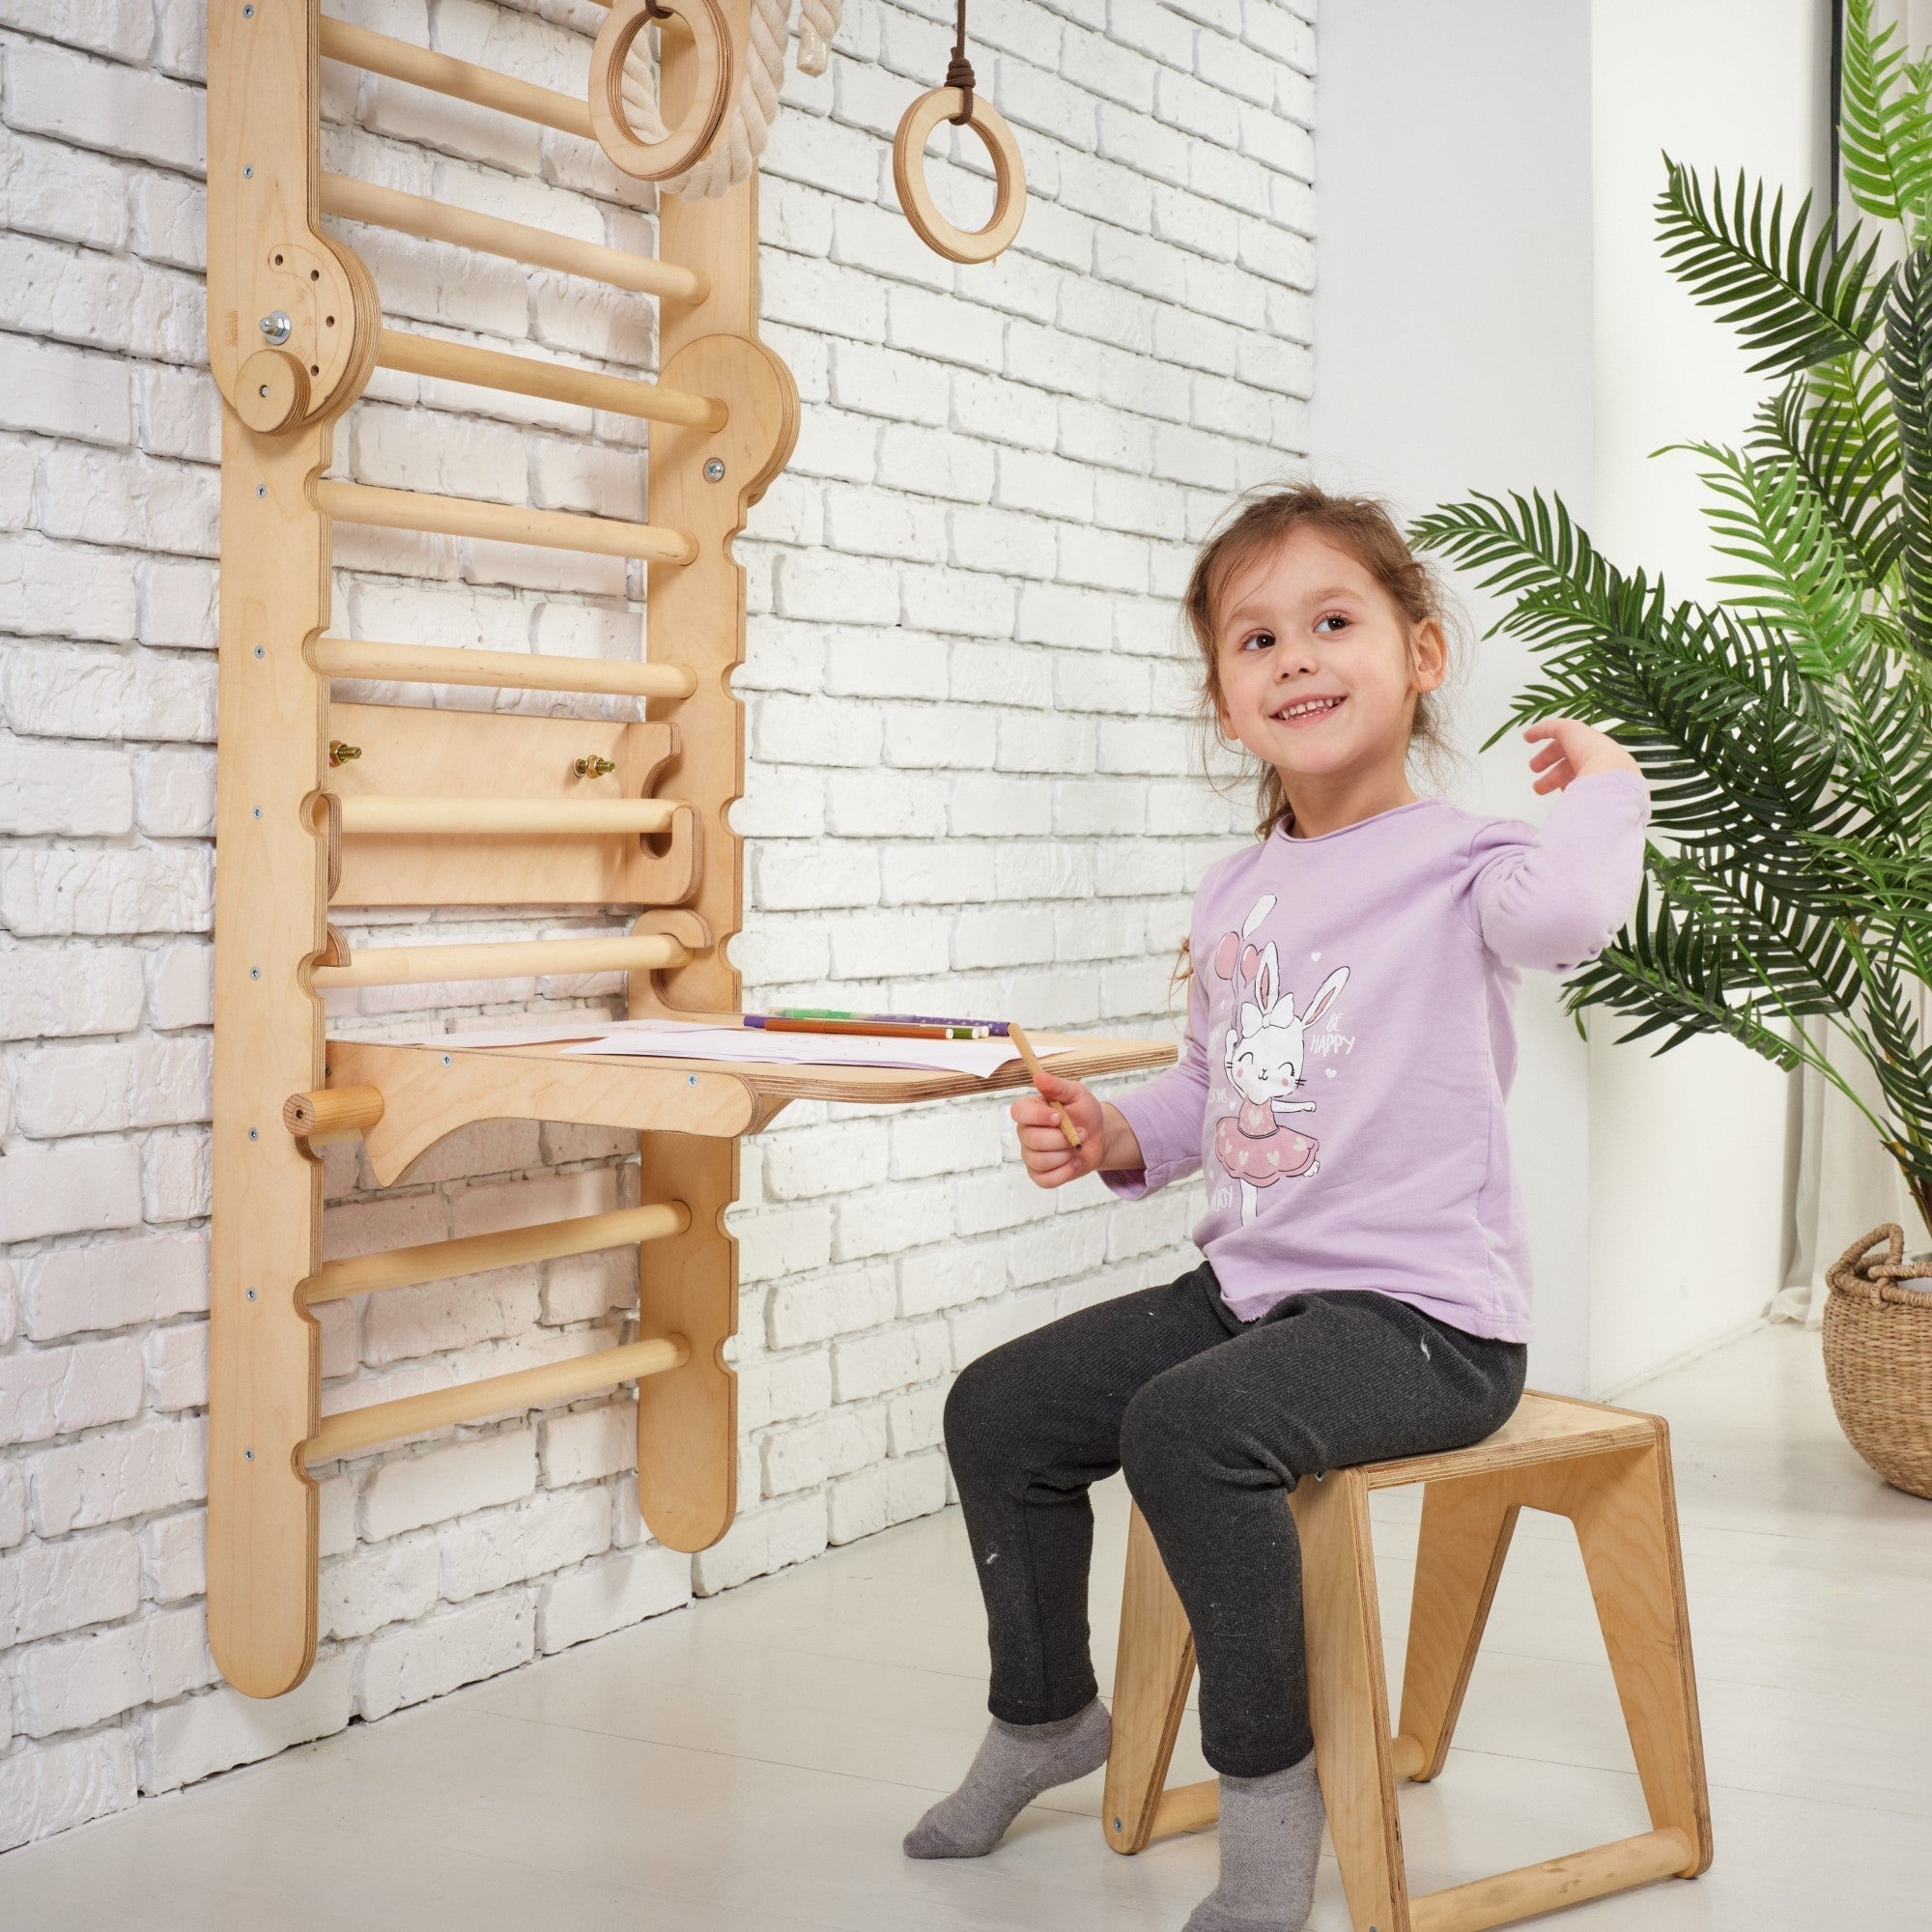 Goodevas 5in1: Swedish Wall for Kids + Swing Set + Slide Board + Art Add-on